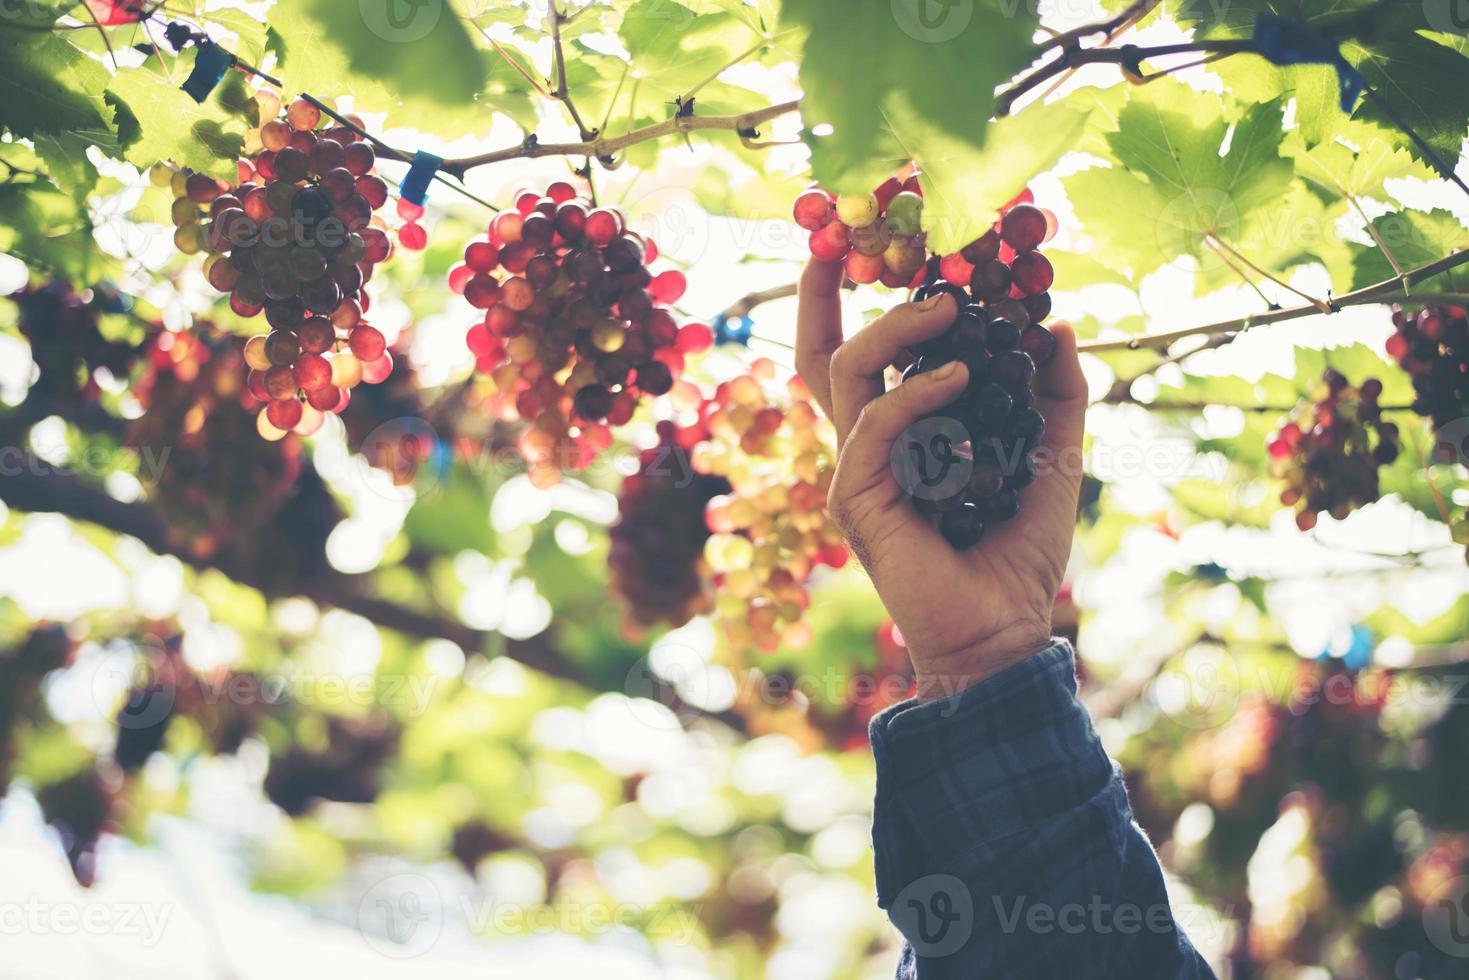 jovem colhendo uvas em um vinhedo durante a temporada de colheita foto